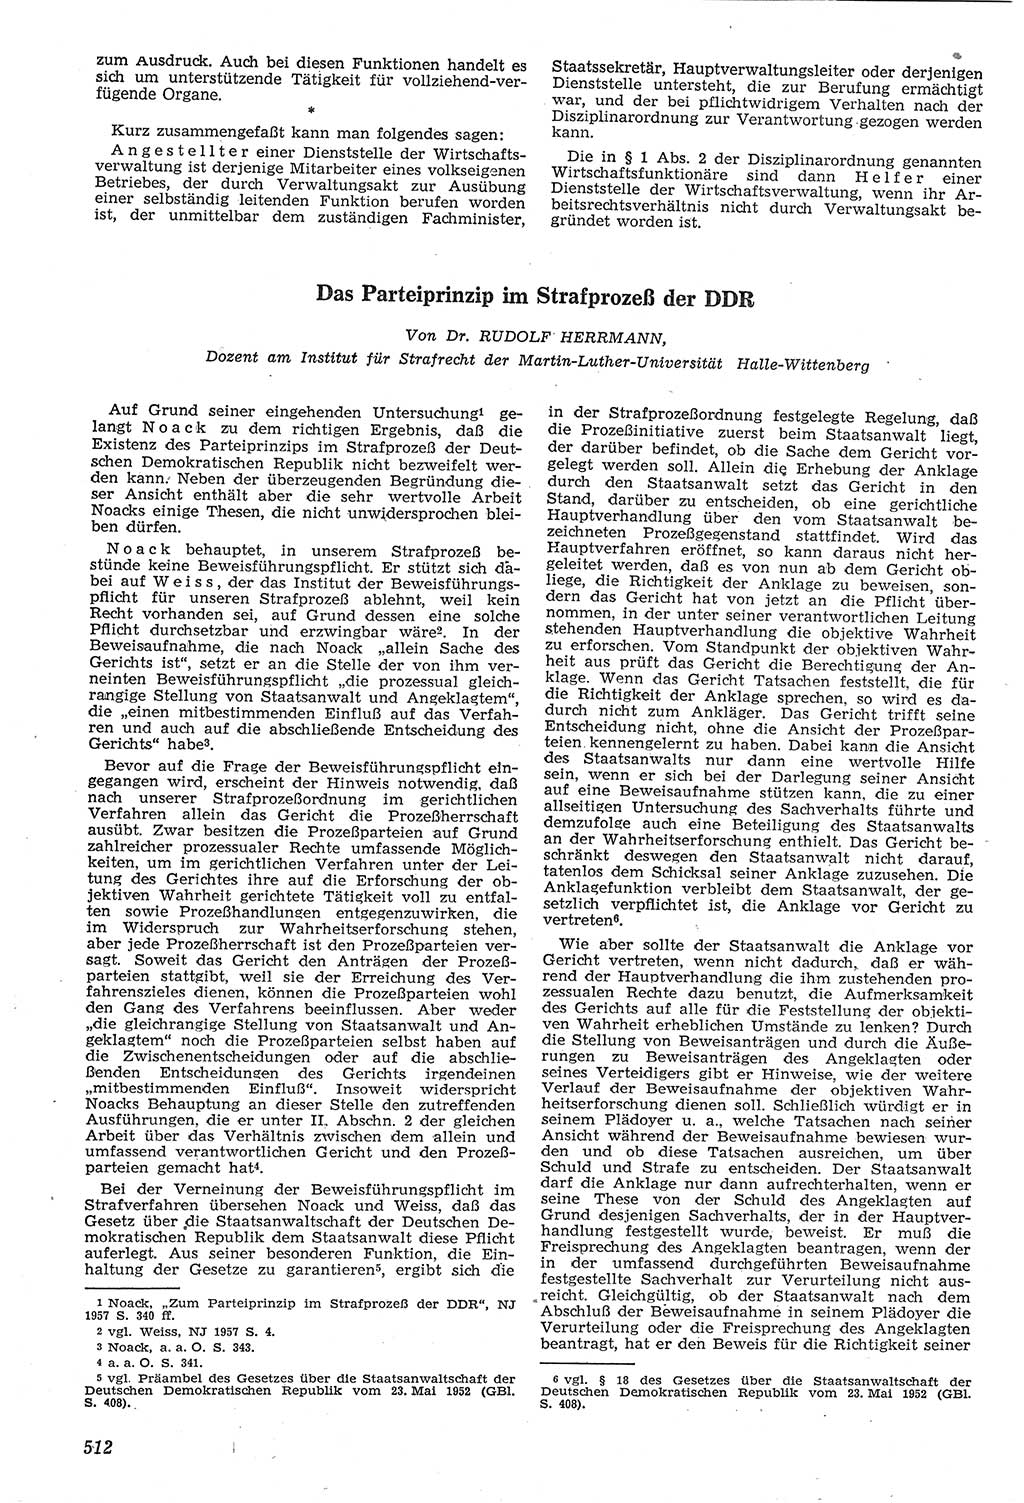 Neue Justiz (NJ), Zeitschrift für Recht und Rechtswissenschaft [Deutsche Demokratische Republik (DDR)], 11. Jahrgang 1957, Seite 512 (NJ DDR 1957, S. 512)